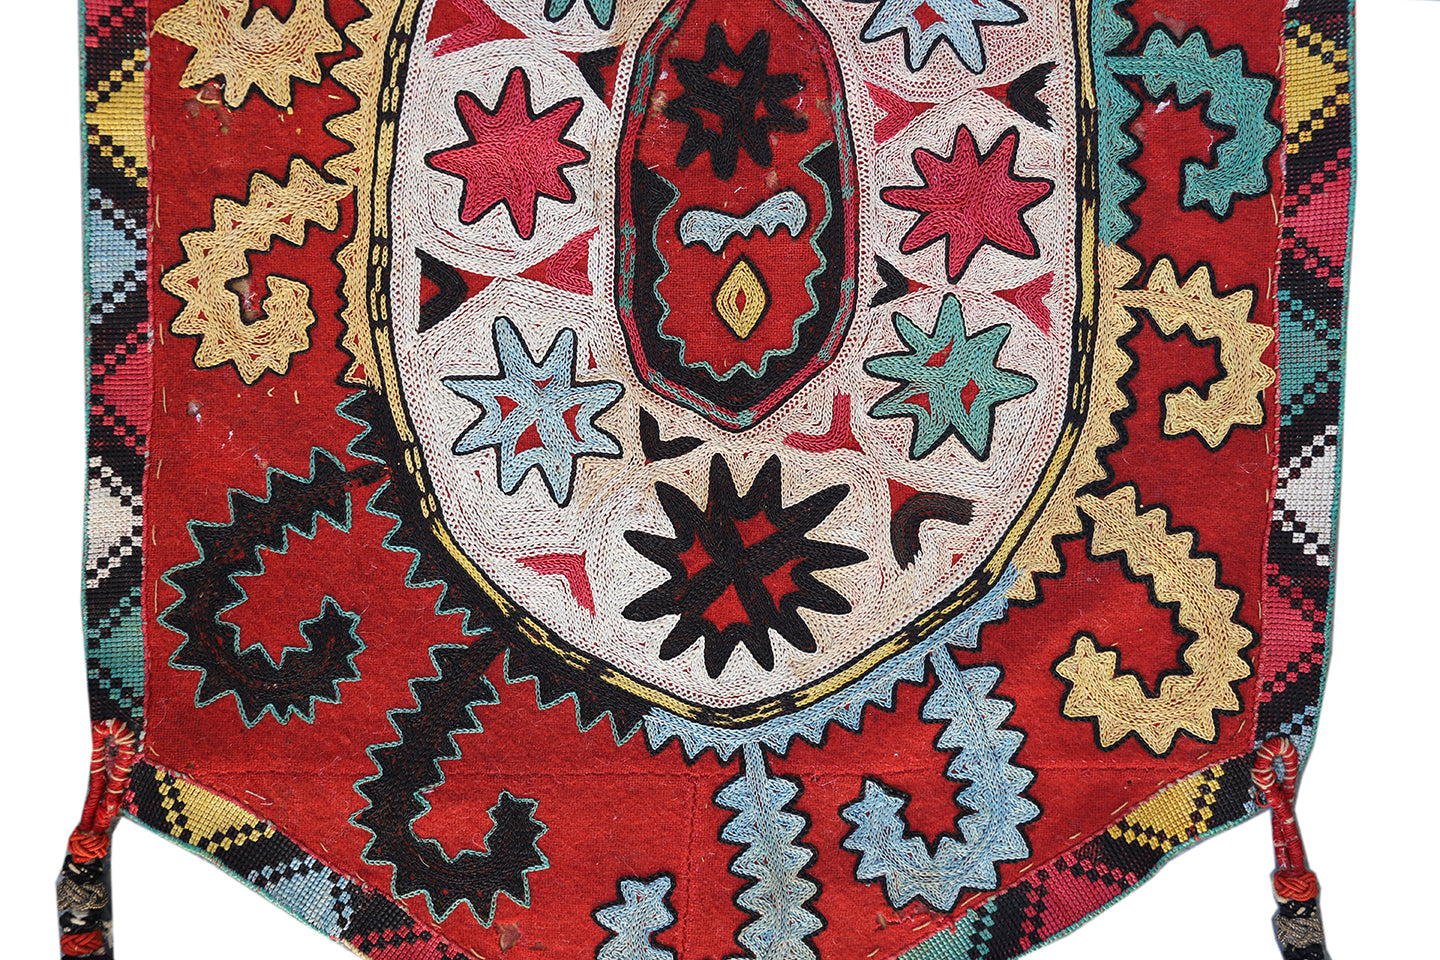 14"x21" Antique Uzbek Lakai Uut kap Ilgich embroidered Suzani